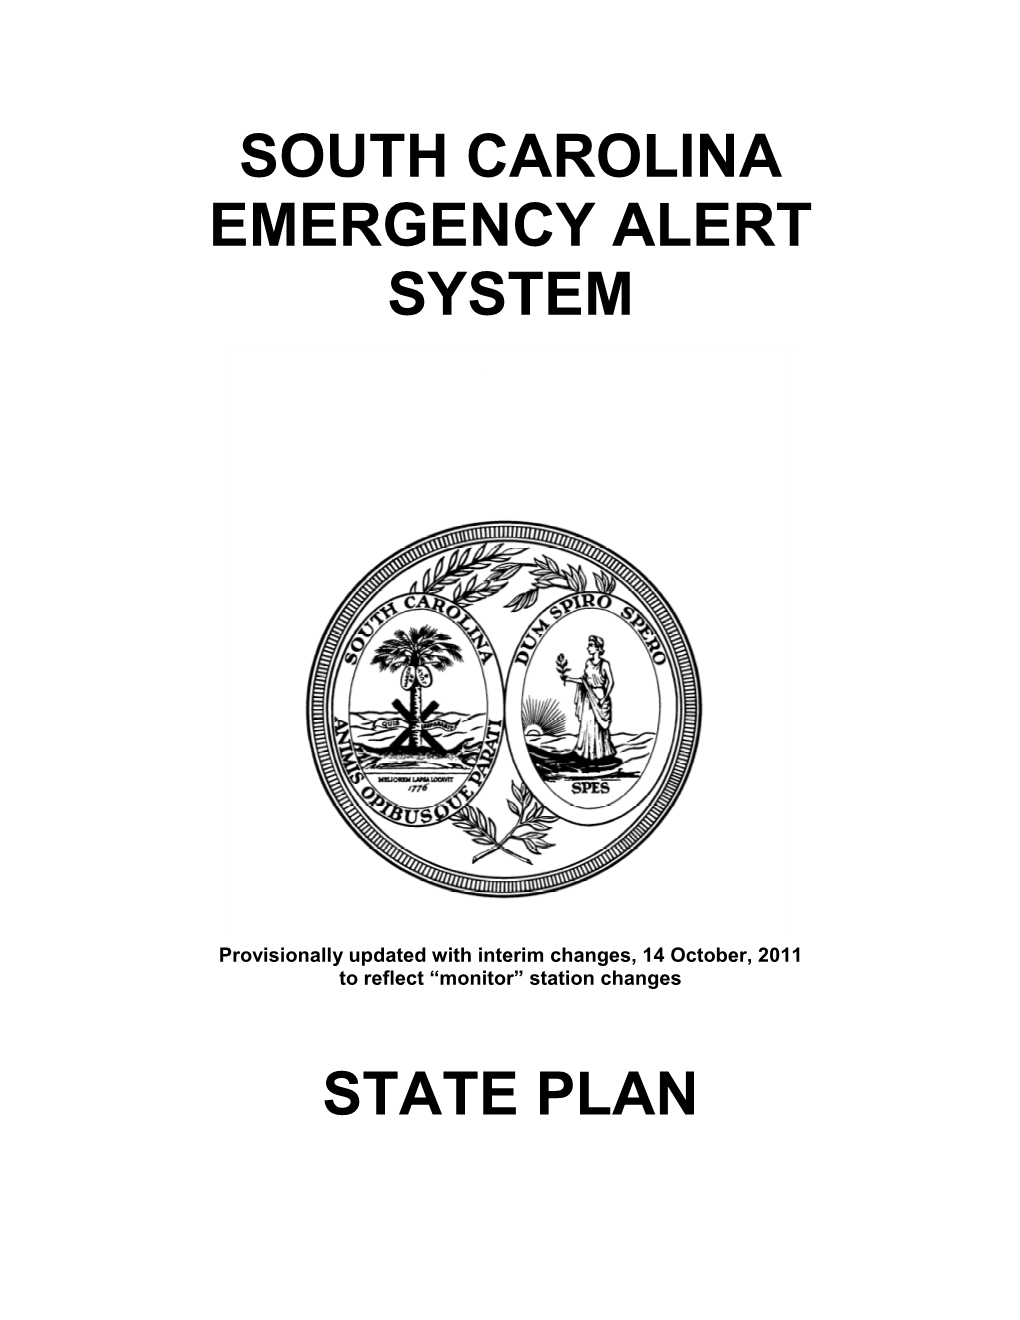 South Carolina Emergency Alert System